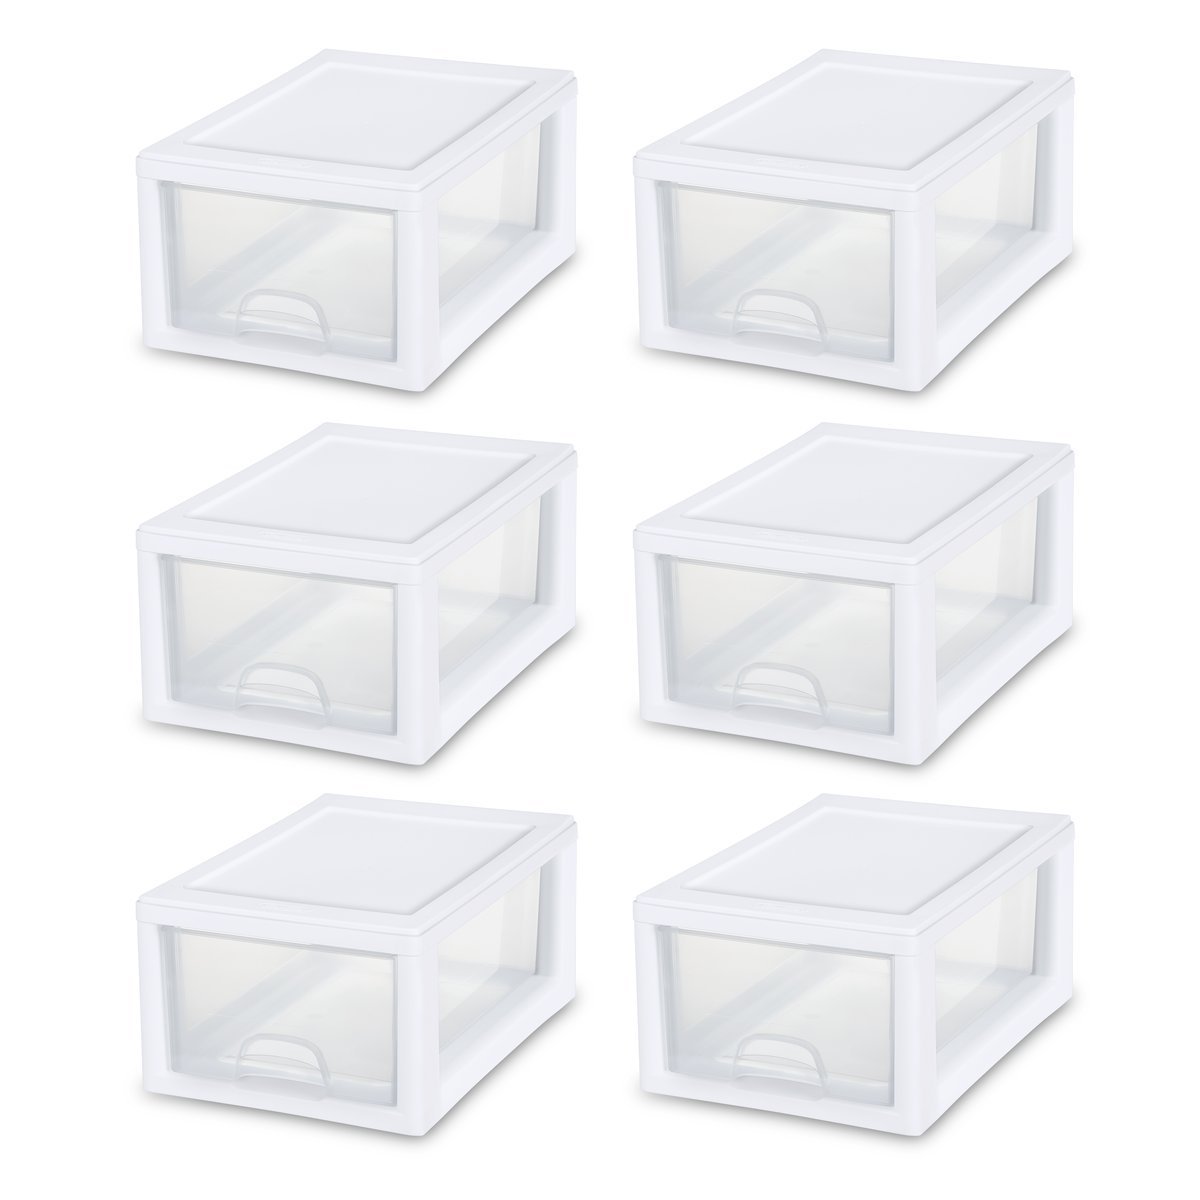 Sterilite Nintendo amiibo drawer boxes